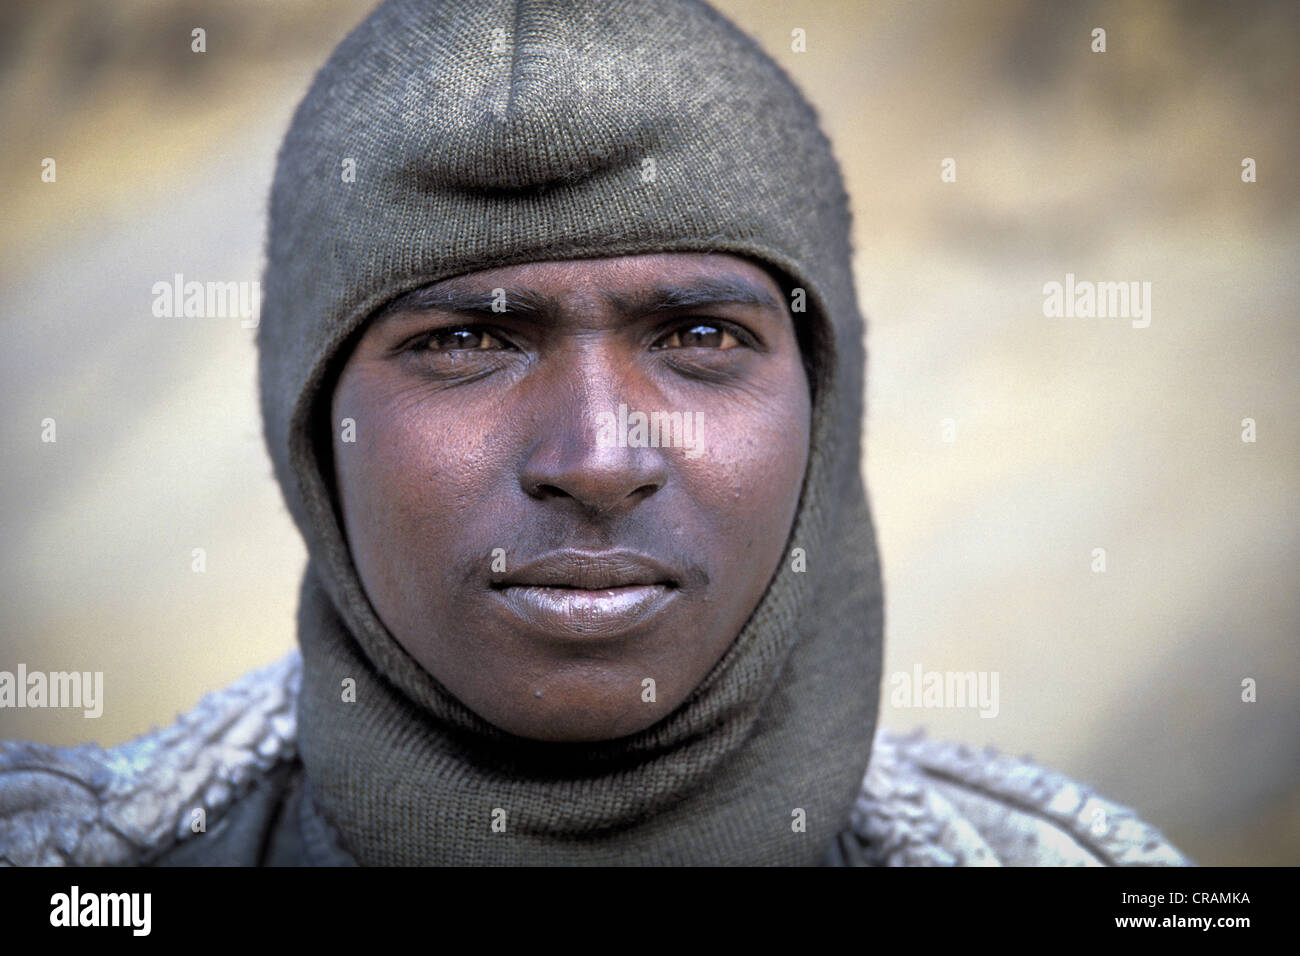 Ouvrier, portrait, près de Pang, Ladakh, Himalaya indien, le Jammu-et-Cachemire, l'Inde du nord, Inde, Asie Banque D'Images